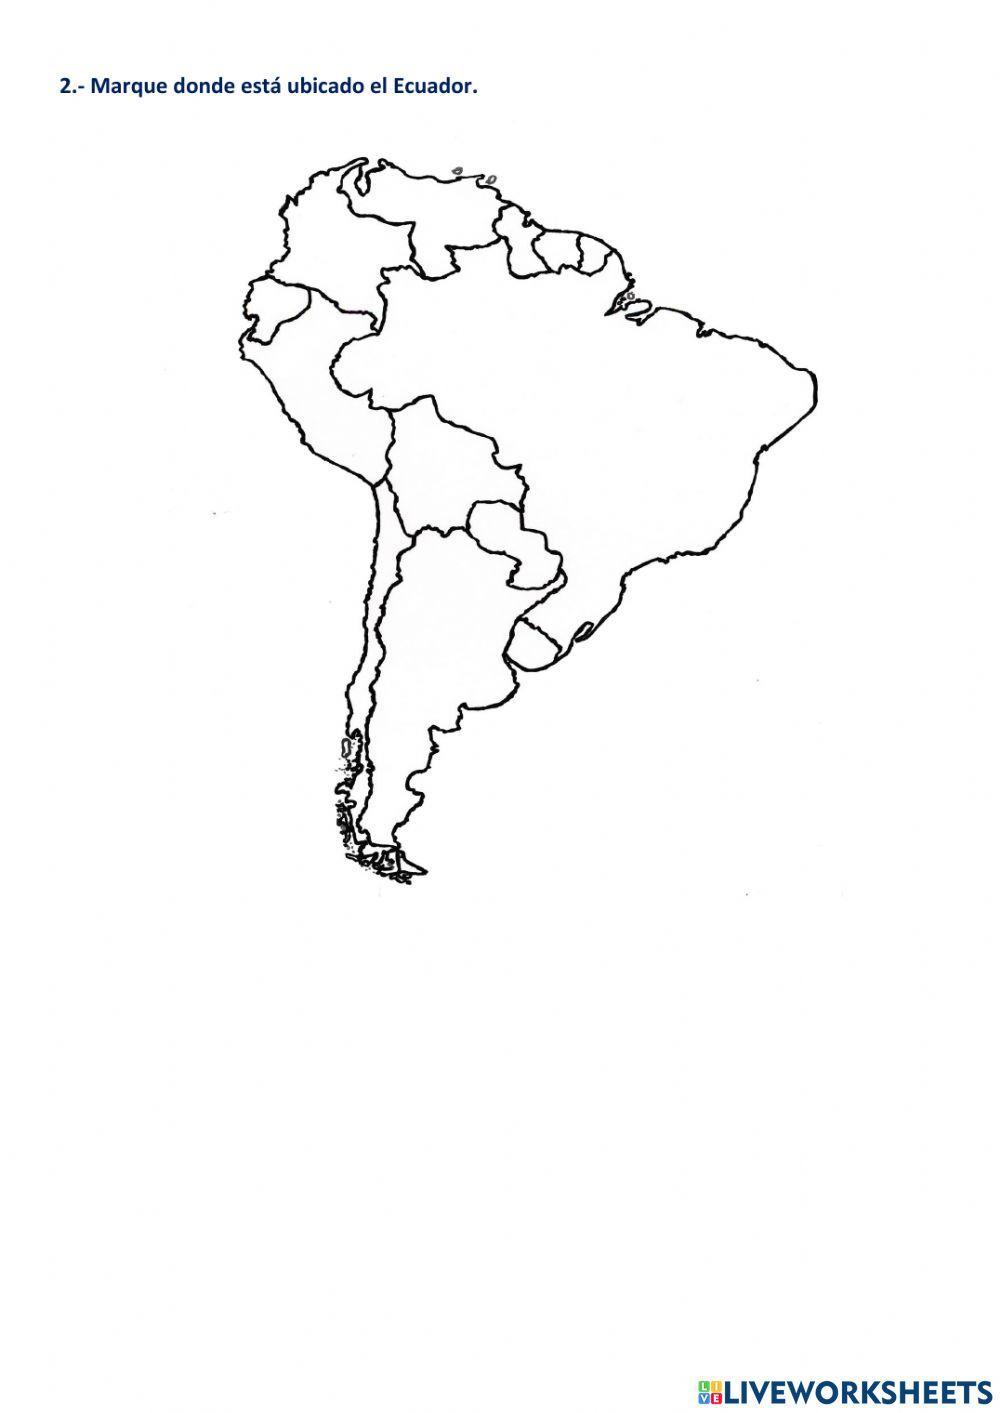 Ecuador en el continente americano